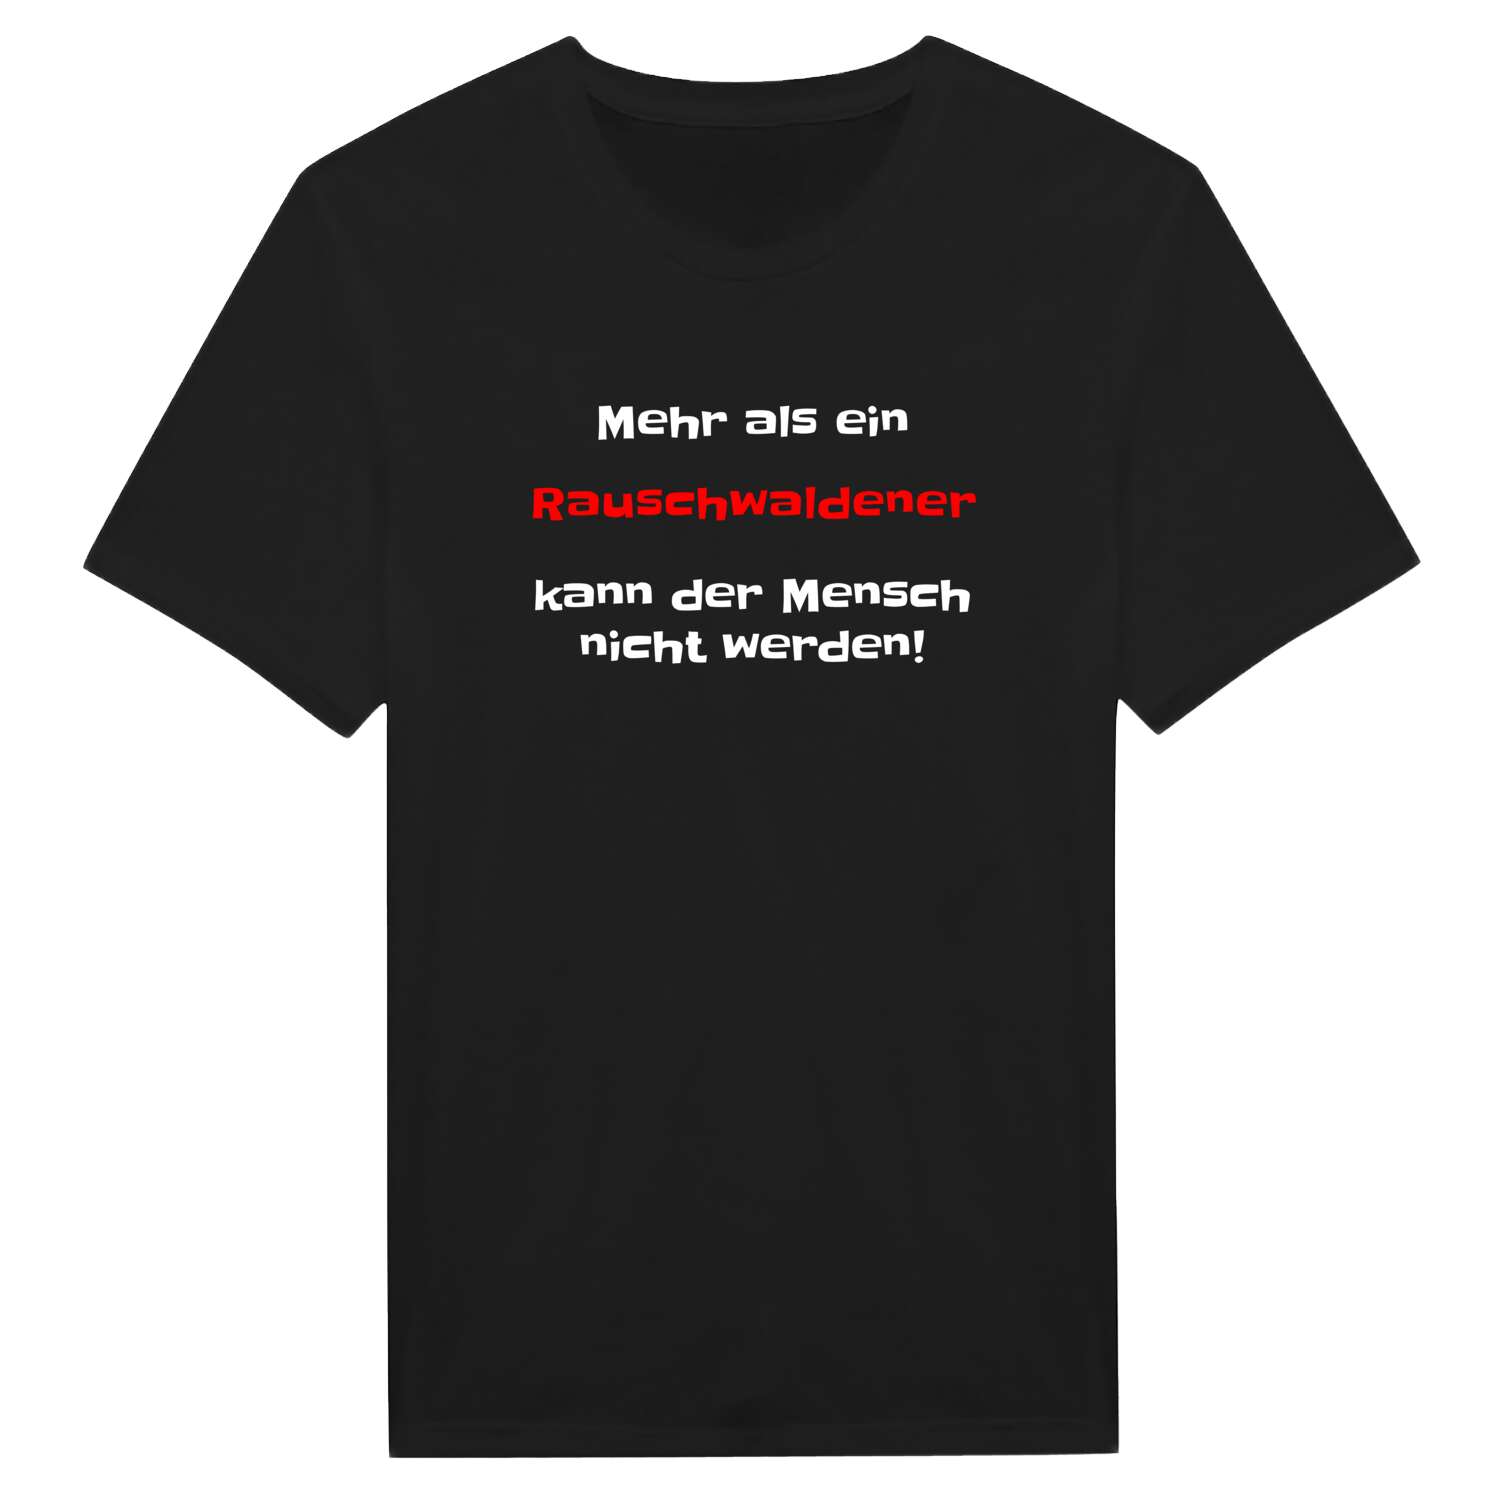 Rauschwalde T-Shirt »Mehr als ein«